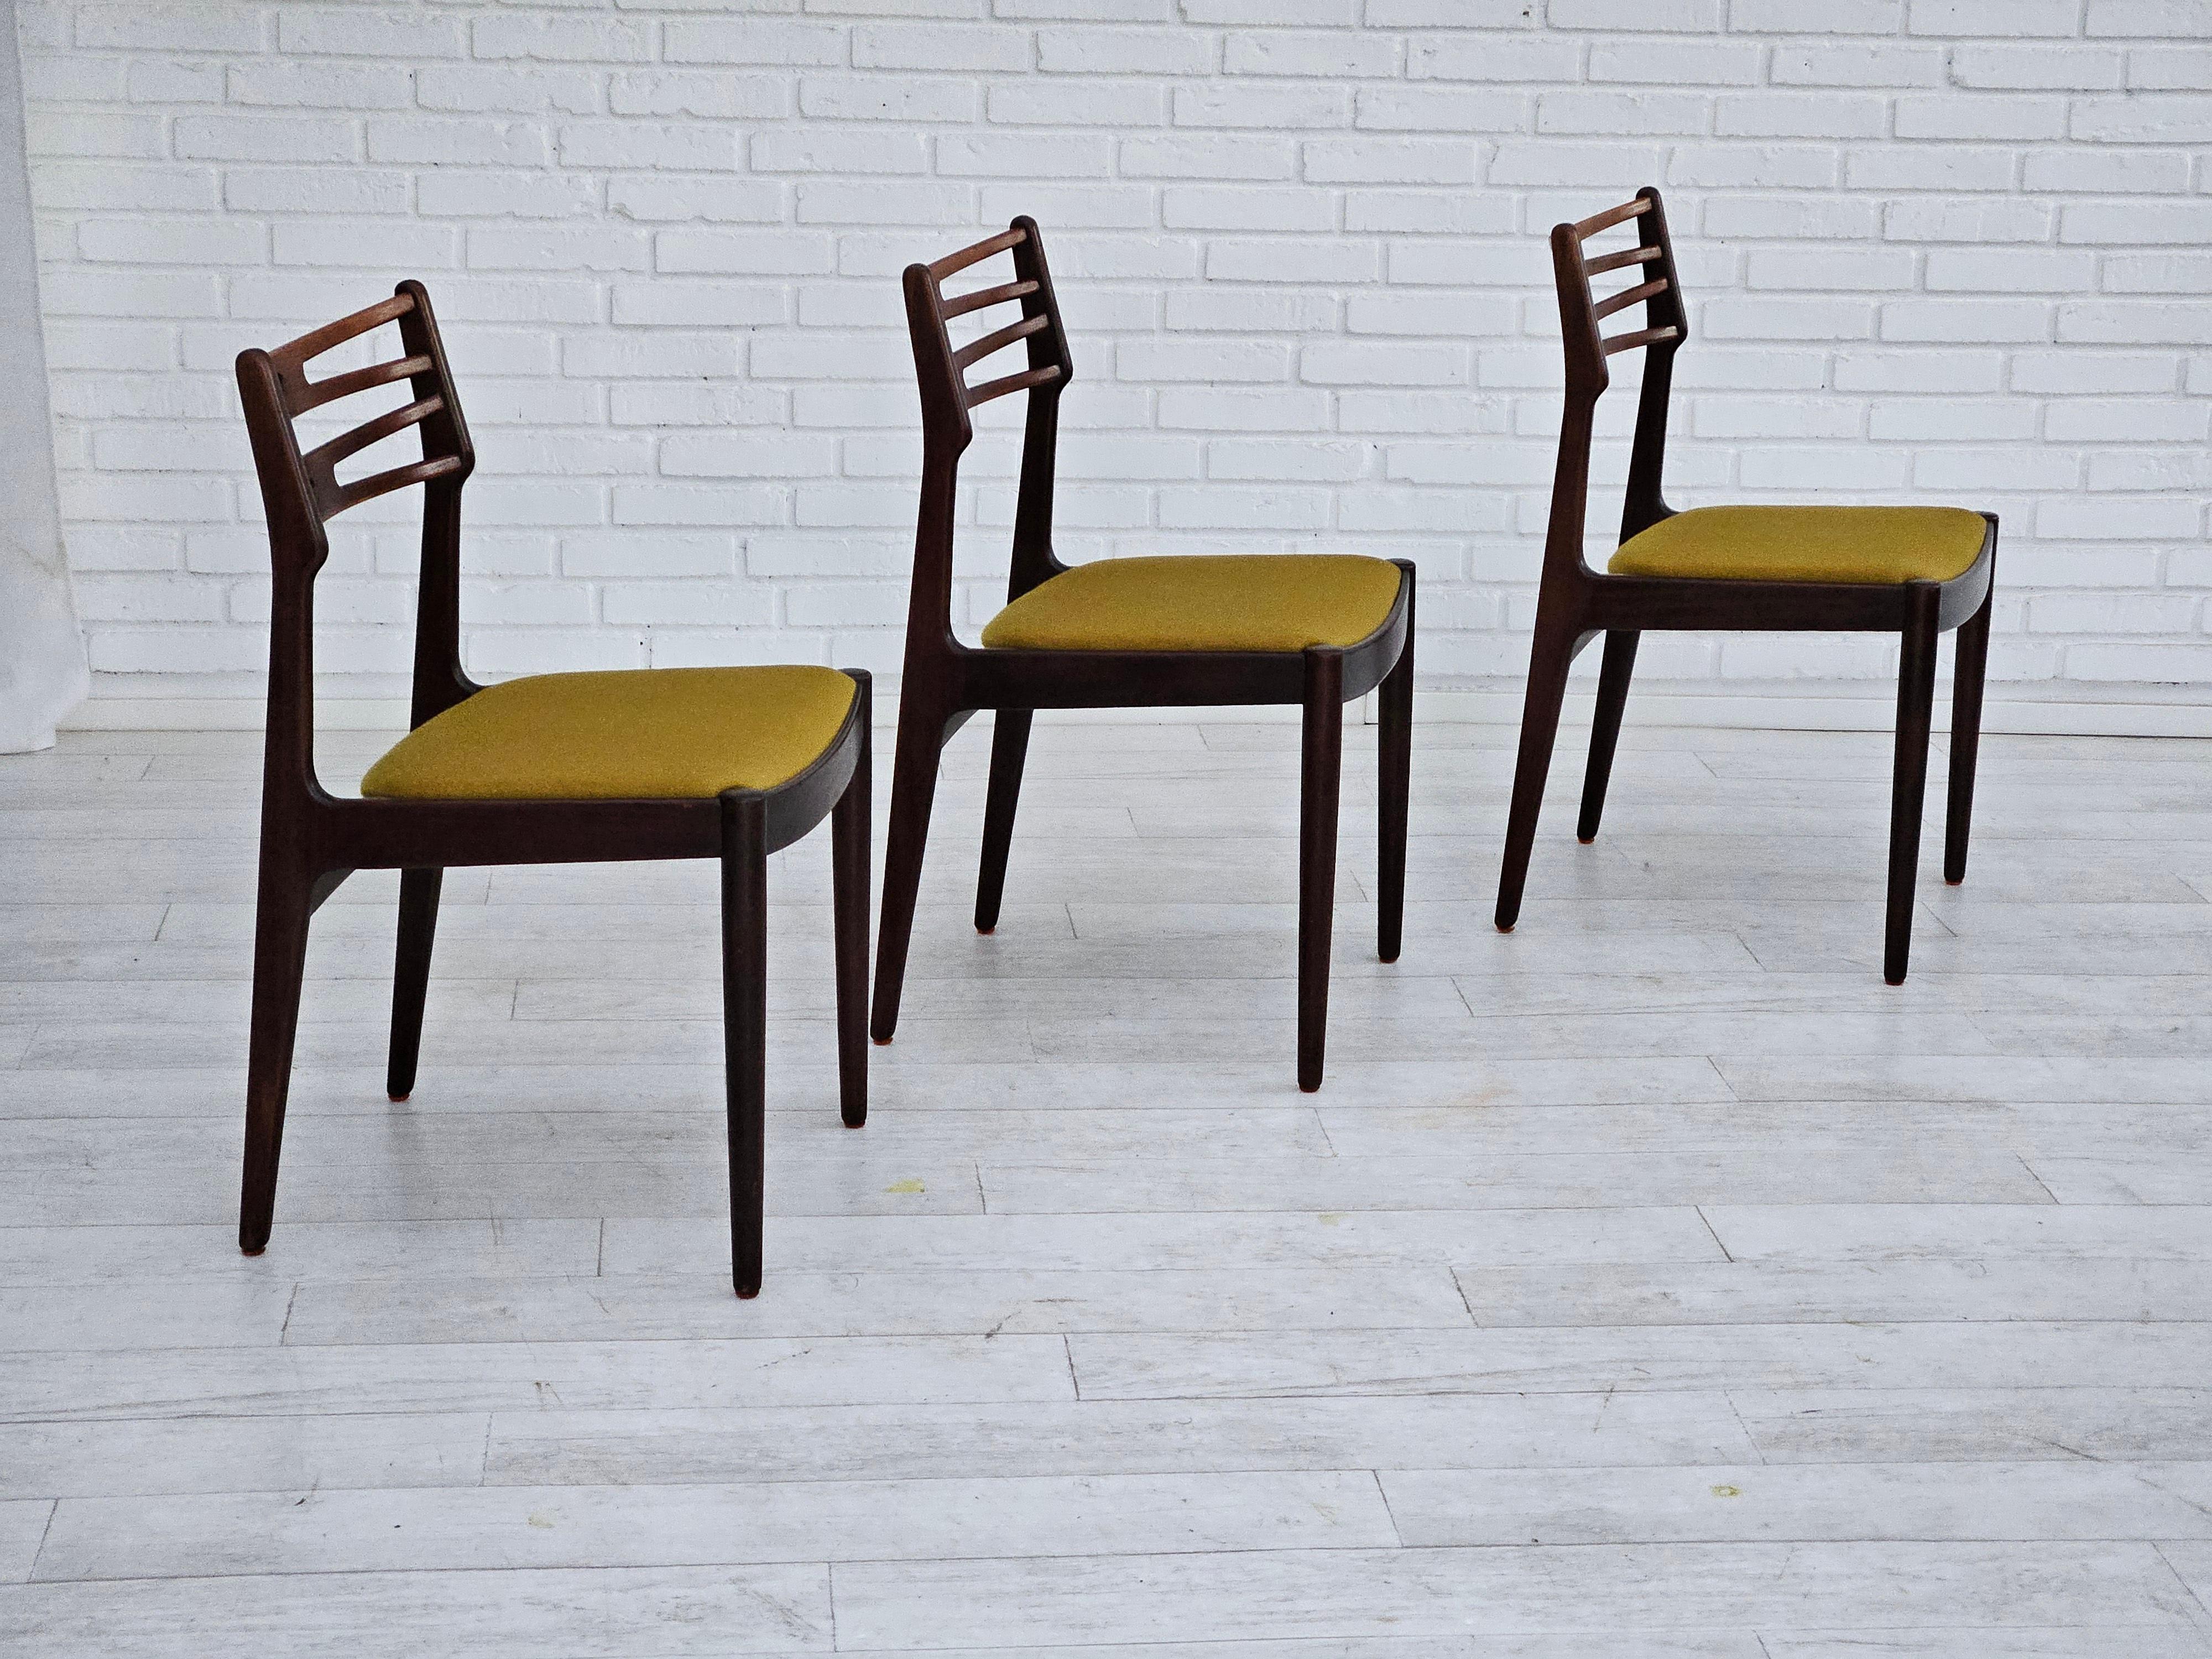 Années 1970, design danois de Johannes Andersen. Ensemble de 3 chaises de salle à manger modèle 101. Très bon état d'origine : pas d'odeurs ni de taches. Bois de teck, laine pour meubles. Fabriqué par le fabricant de meubles danois Vamo Sønderborg